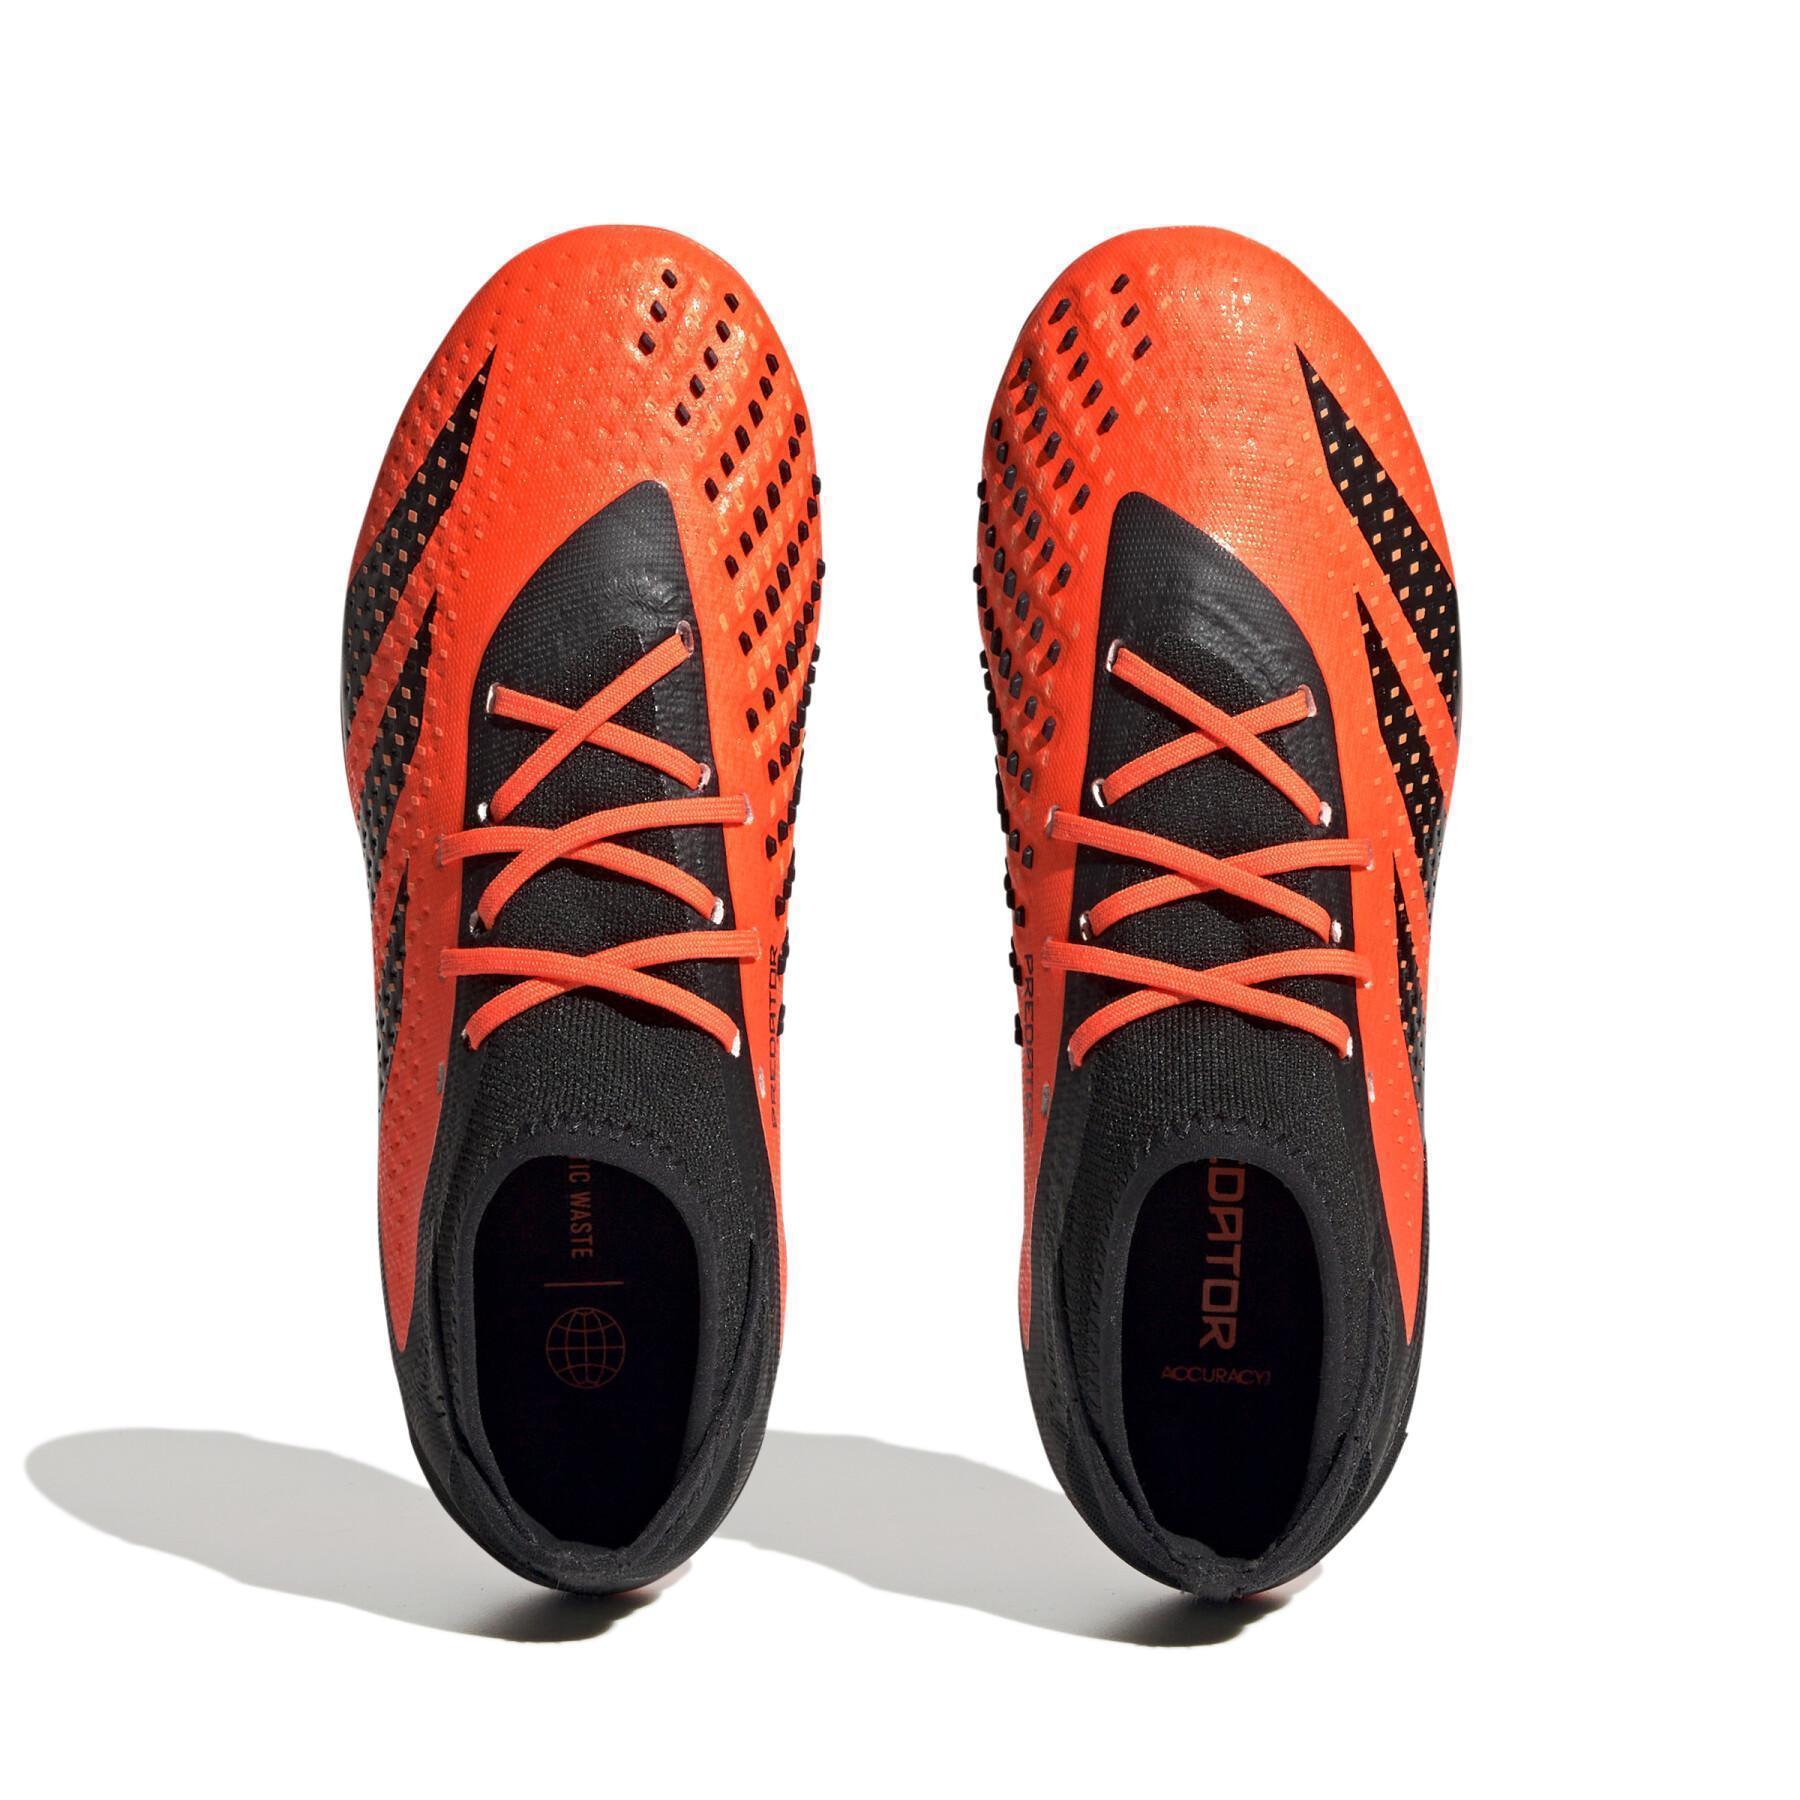 Dziecięce buty piłkarskie adidas Predator Accuracy.1 FG Heatspawn Pack